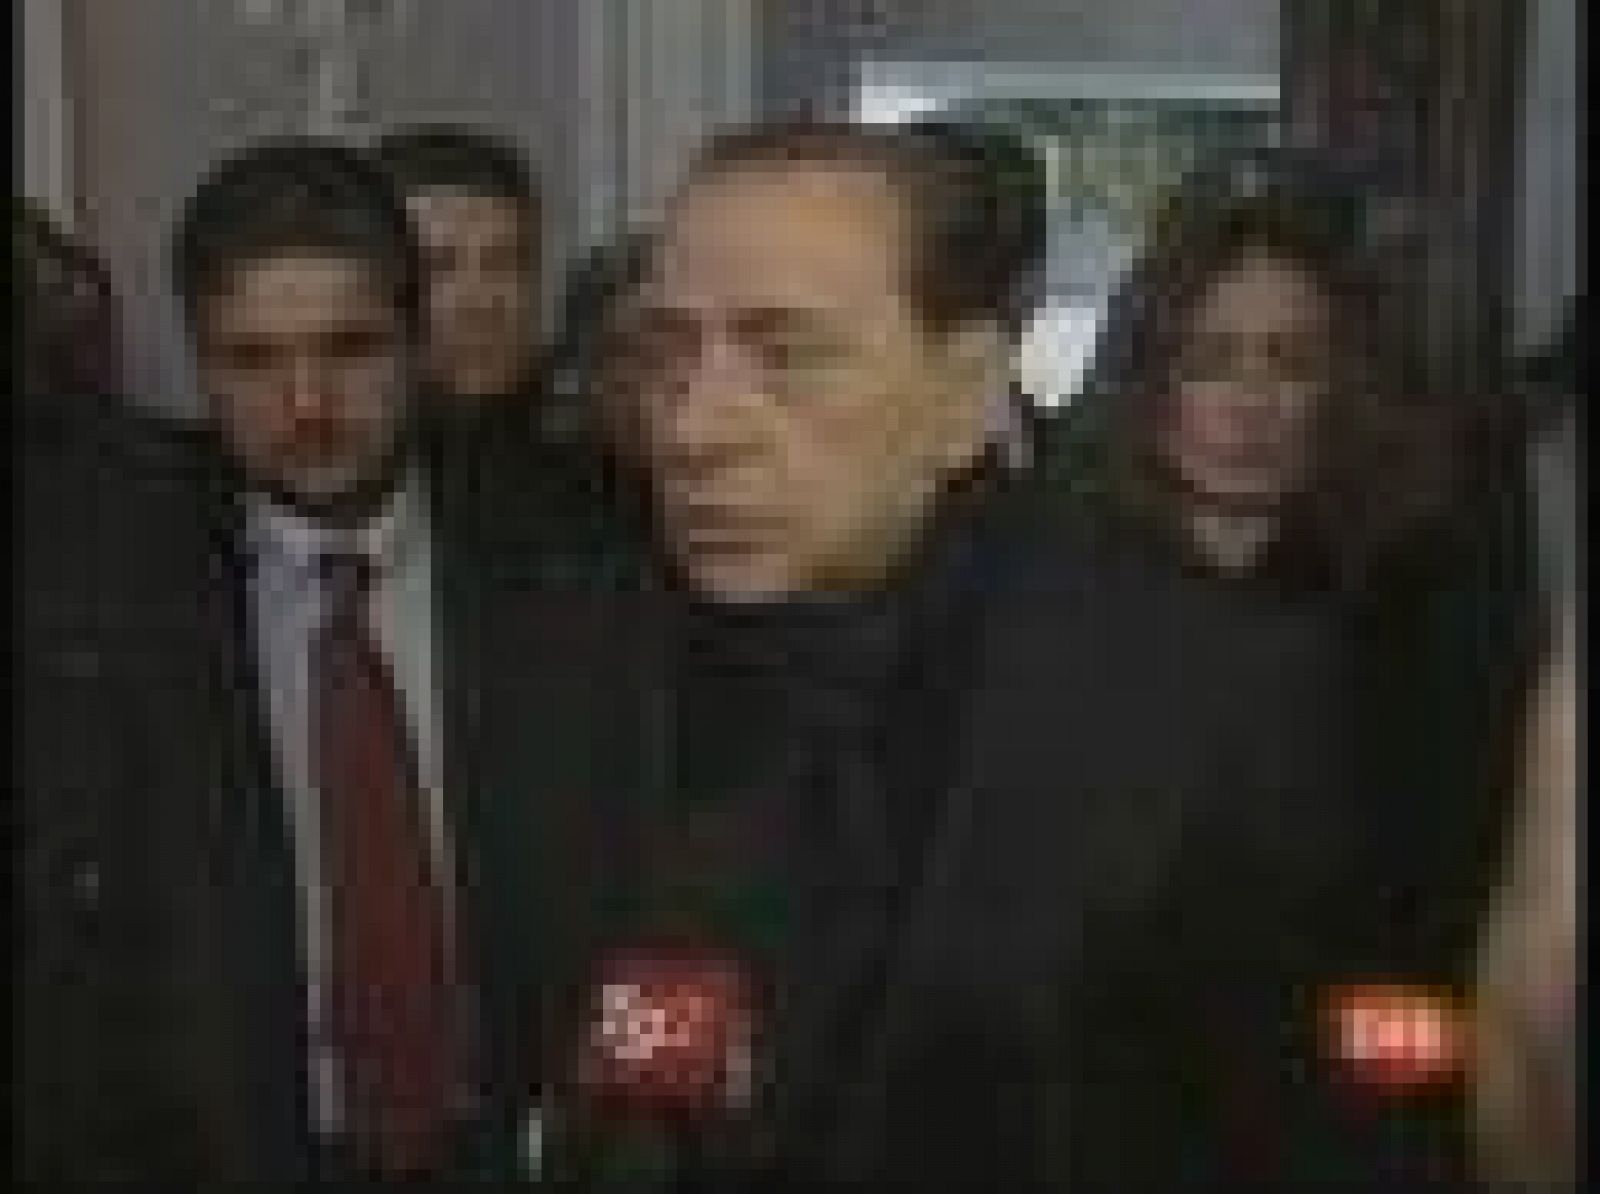  El padre de Eluana ha invitado al presidente italiano, Giorgio Napolitano, y al primer ministro Silvio Berlusconi a visitar a su hija en la clínica de Udine donde se encuentra ingresada para conocer de cerca su etado.